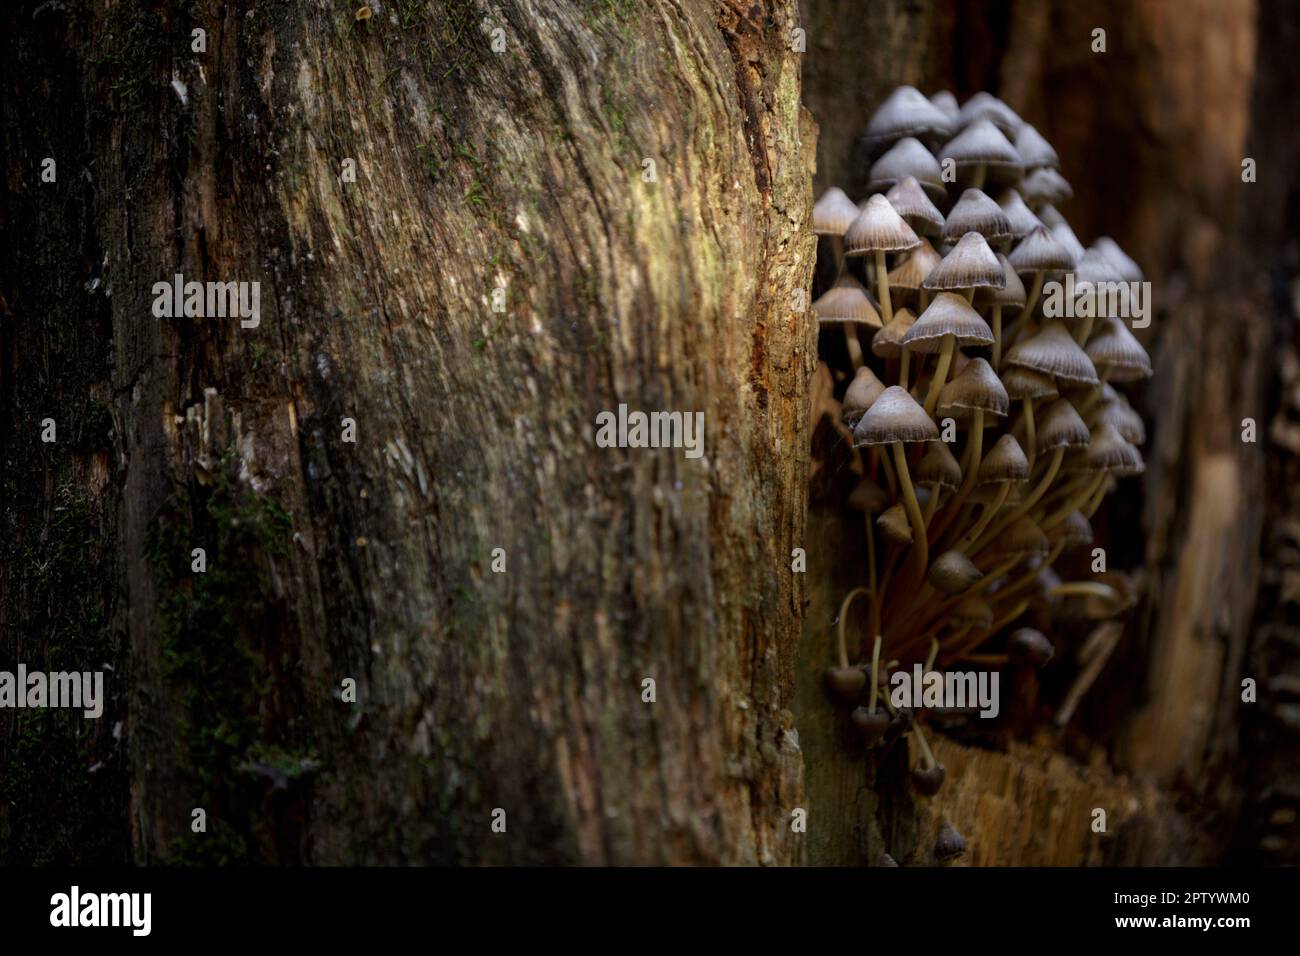 Taburete de sapo, hongo venenoso. Setas forestales en un tronco de árbol podrido con musgo. Un grupo de hongos venenosos en el tocón podrido en el bosque Foto de stock